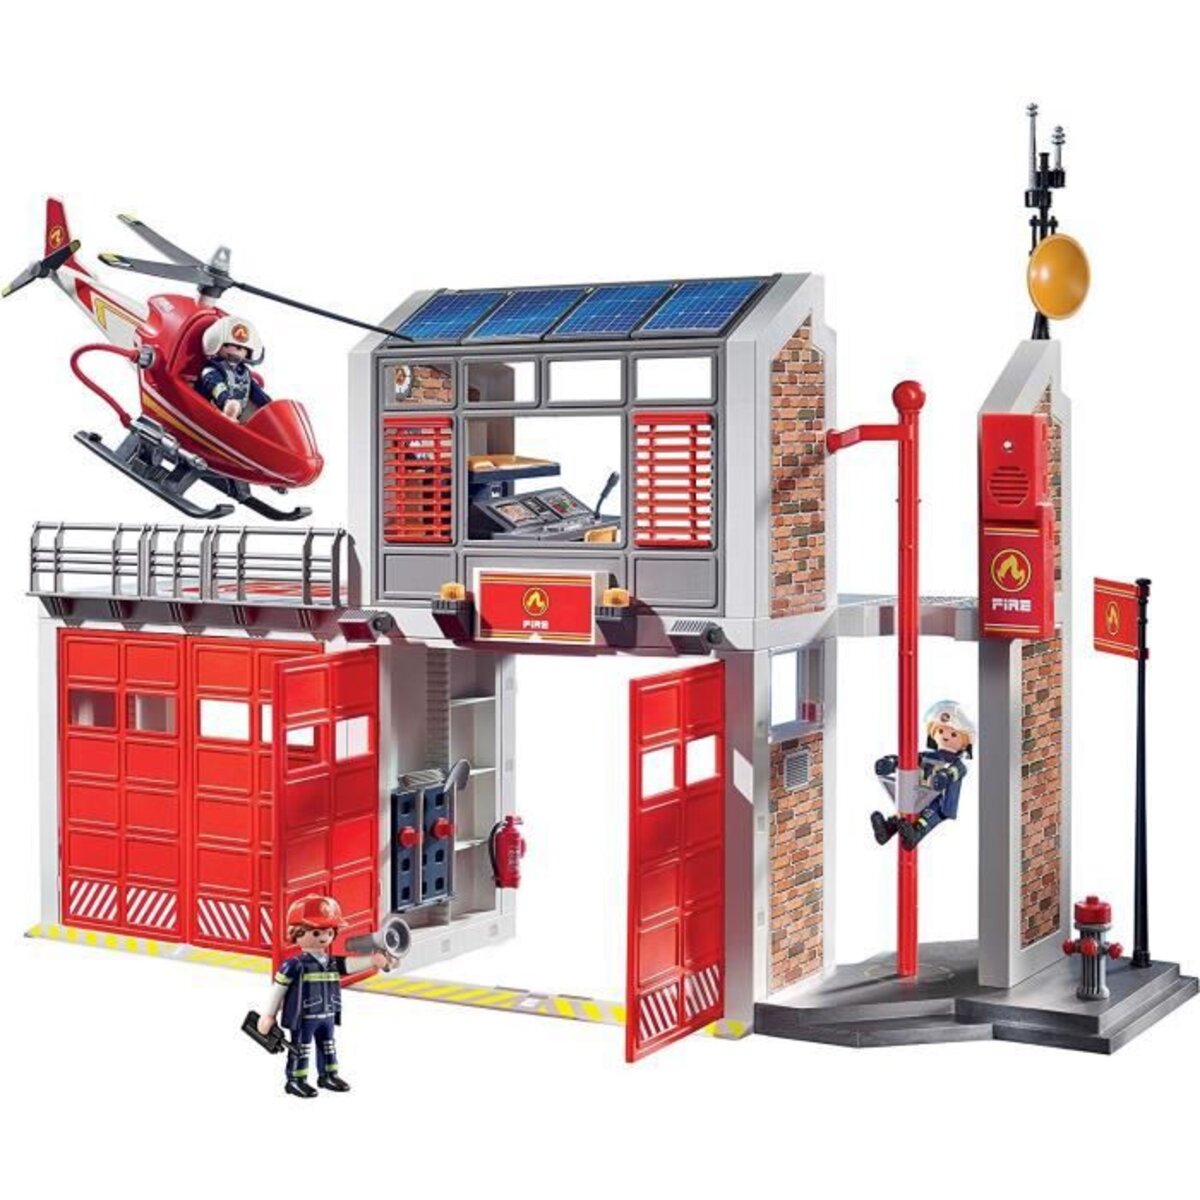 Playmobil City Action Les pompiers 9465 Pompier avec véhicule et